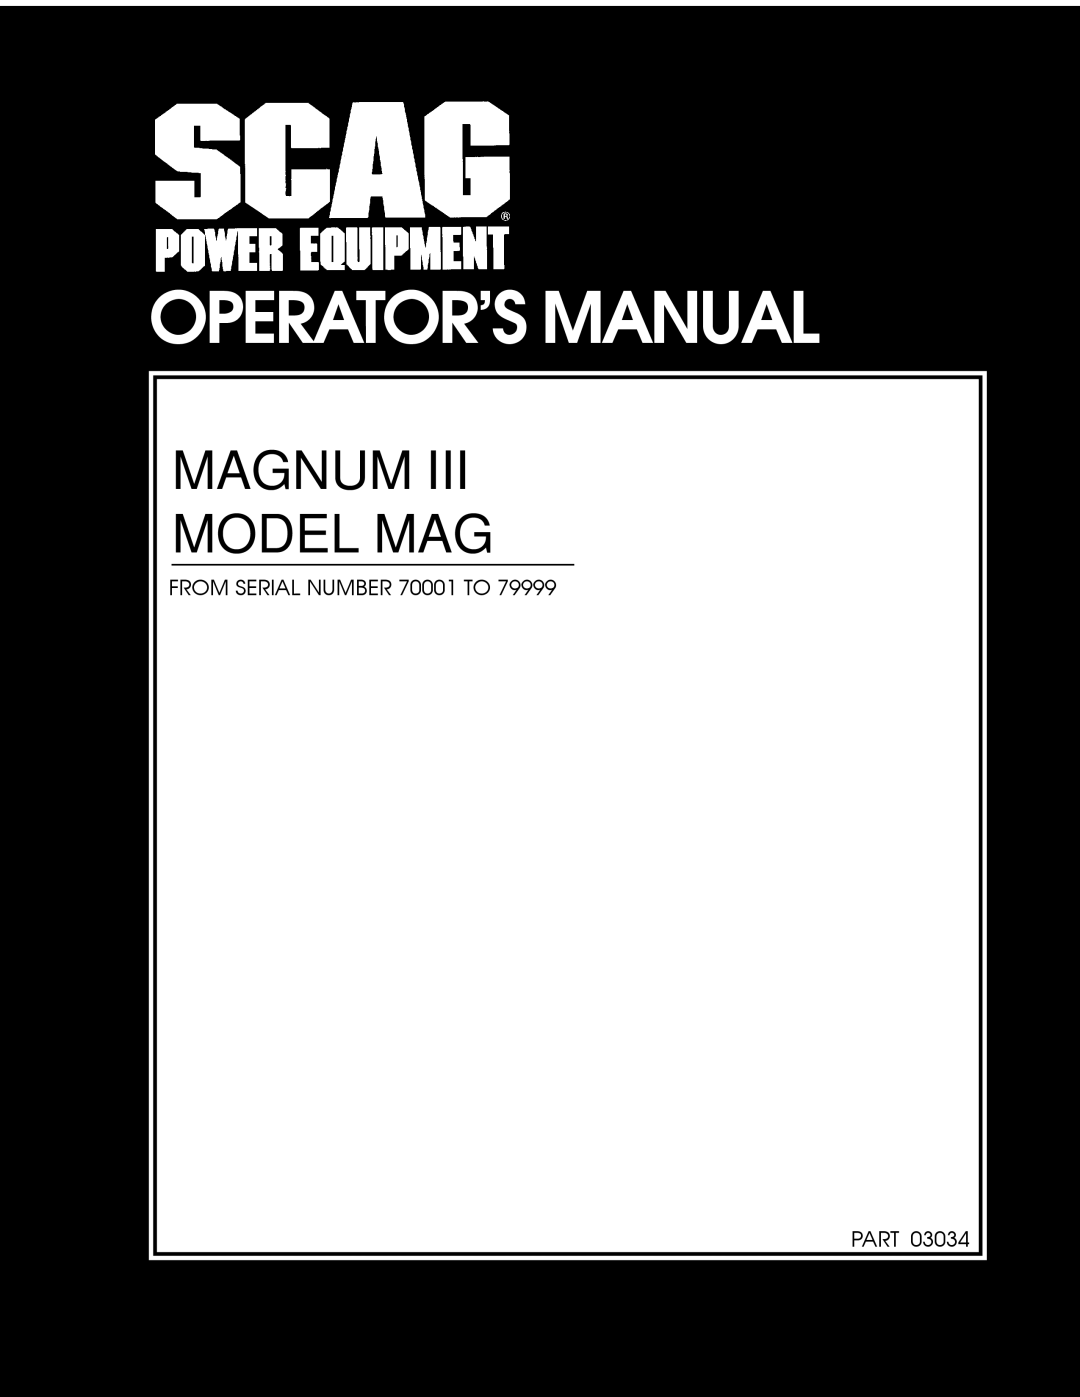 Scag Power Equipment MAG manual Operators Manual, Magnum Model Mag 